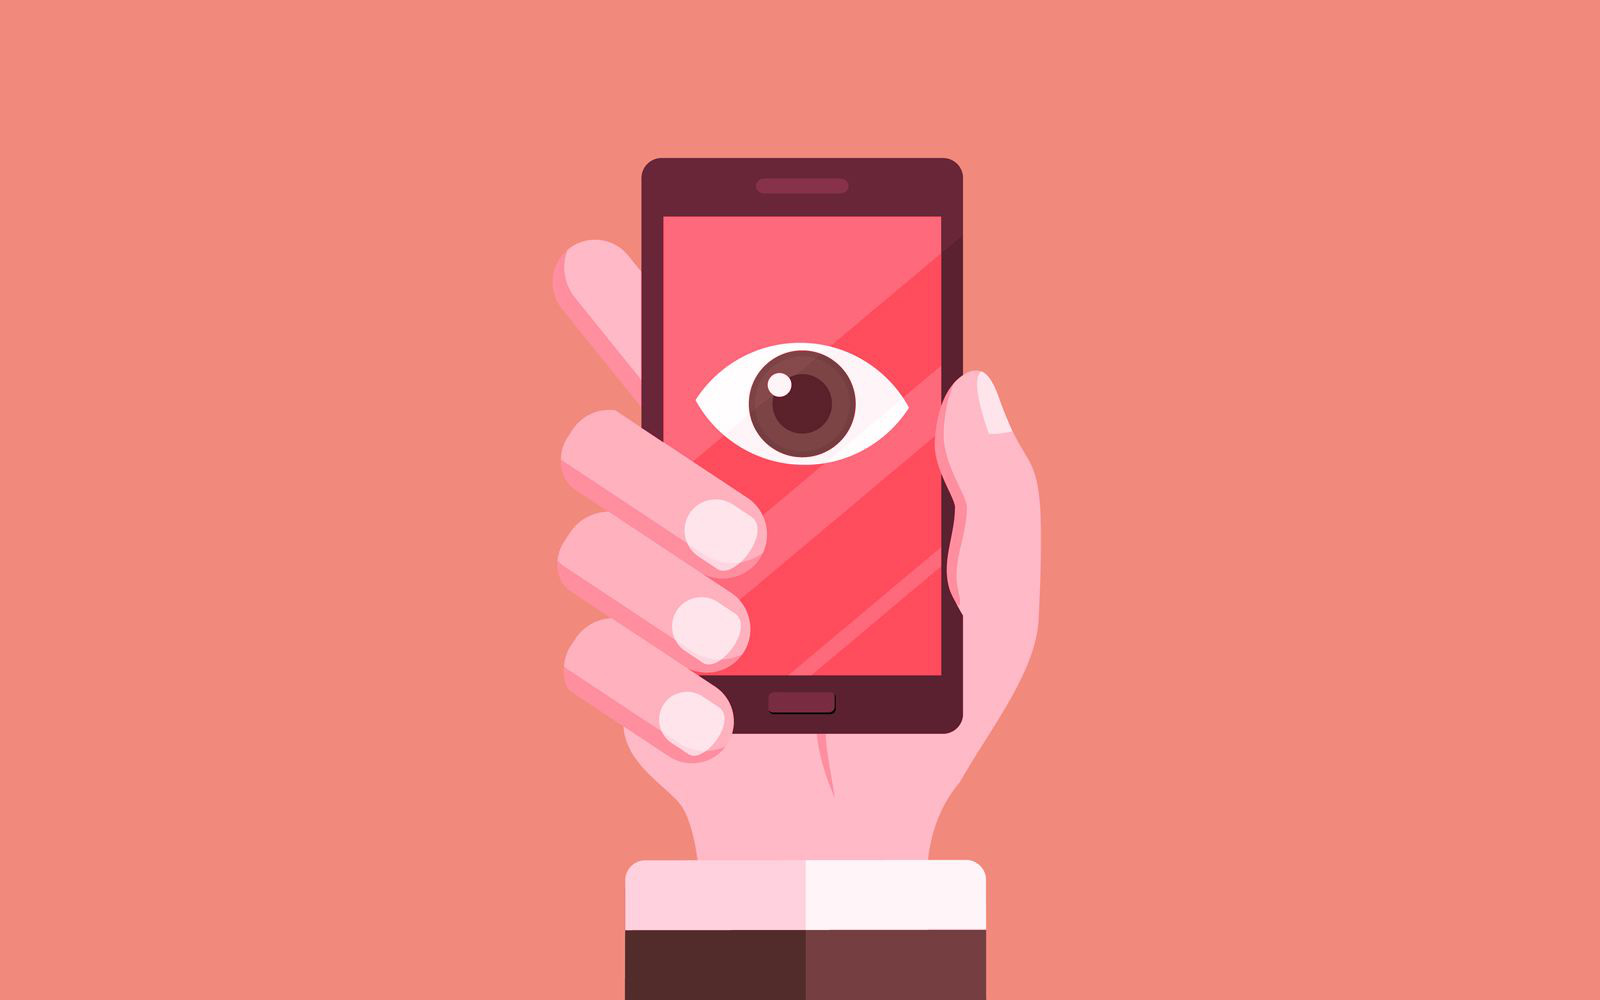 Một ứng dụng &quot;trộm cắp&quot; mới xuất hiện trên smartphone, người dùng có nguy cơ bị lộ tin nhắn, hình ảnh!